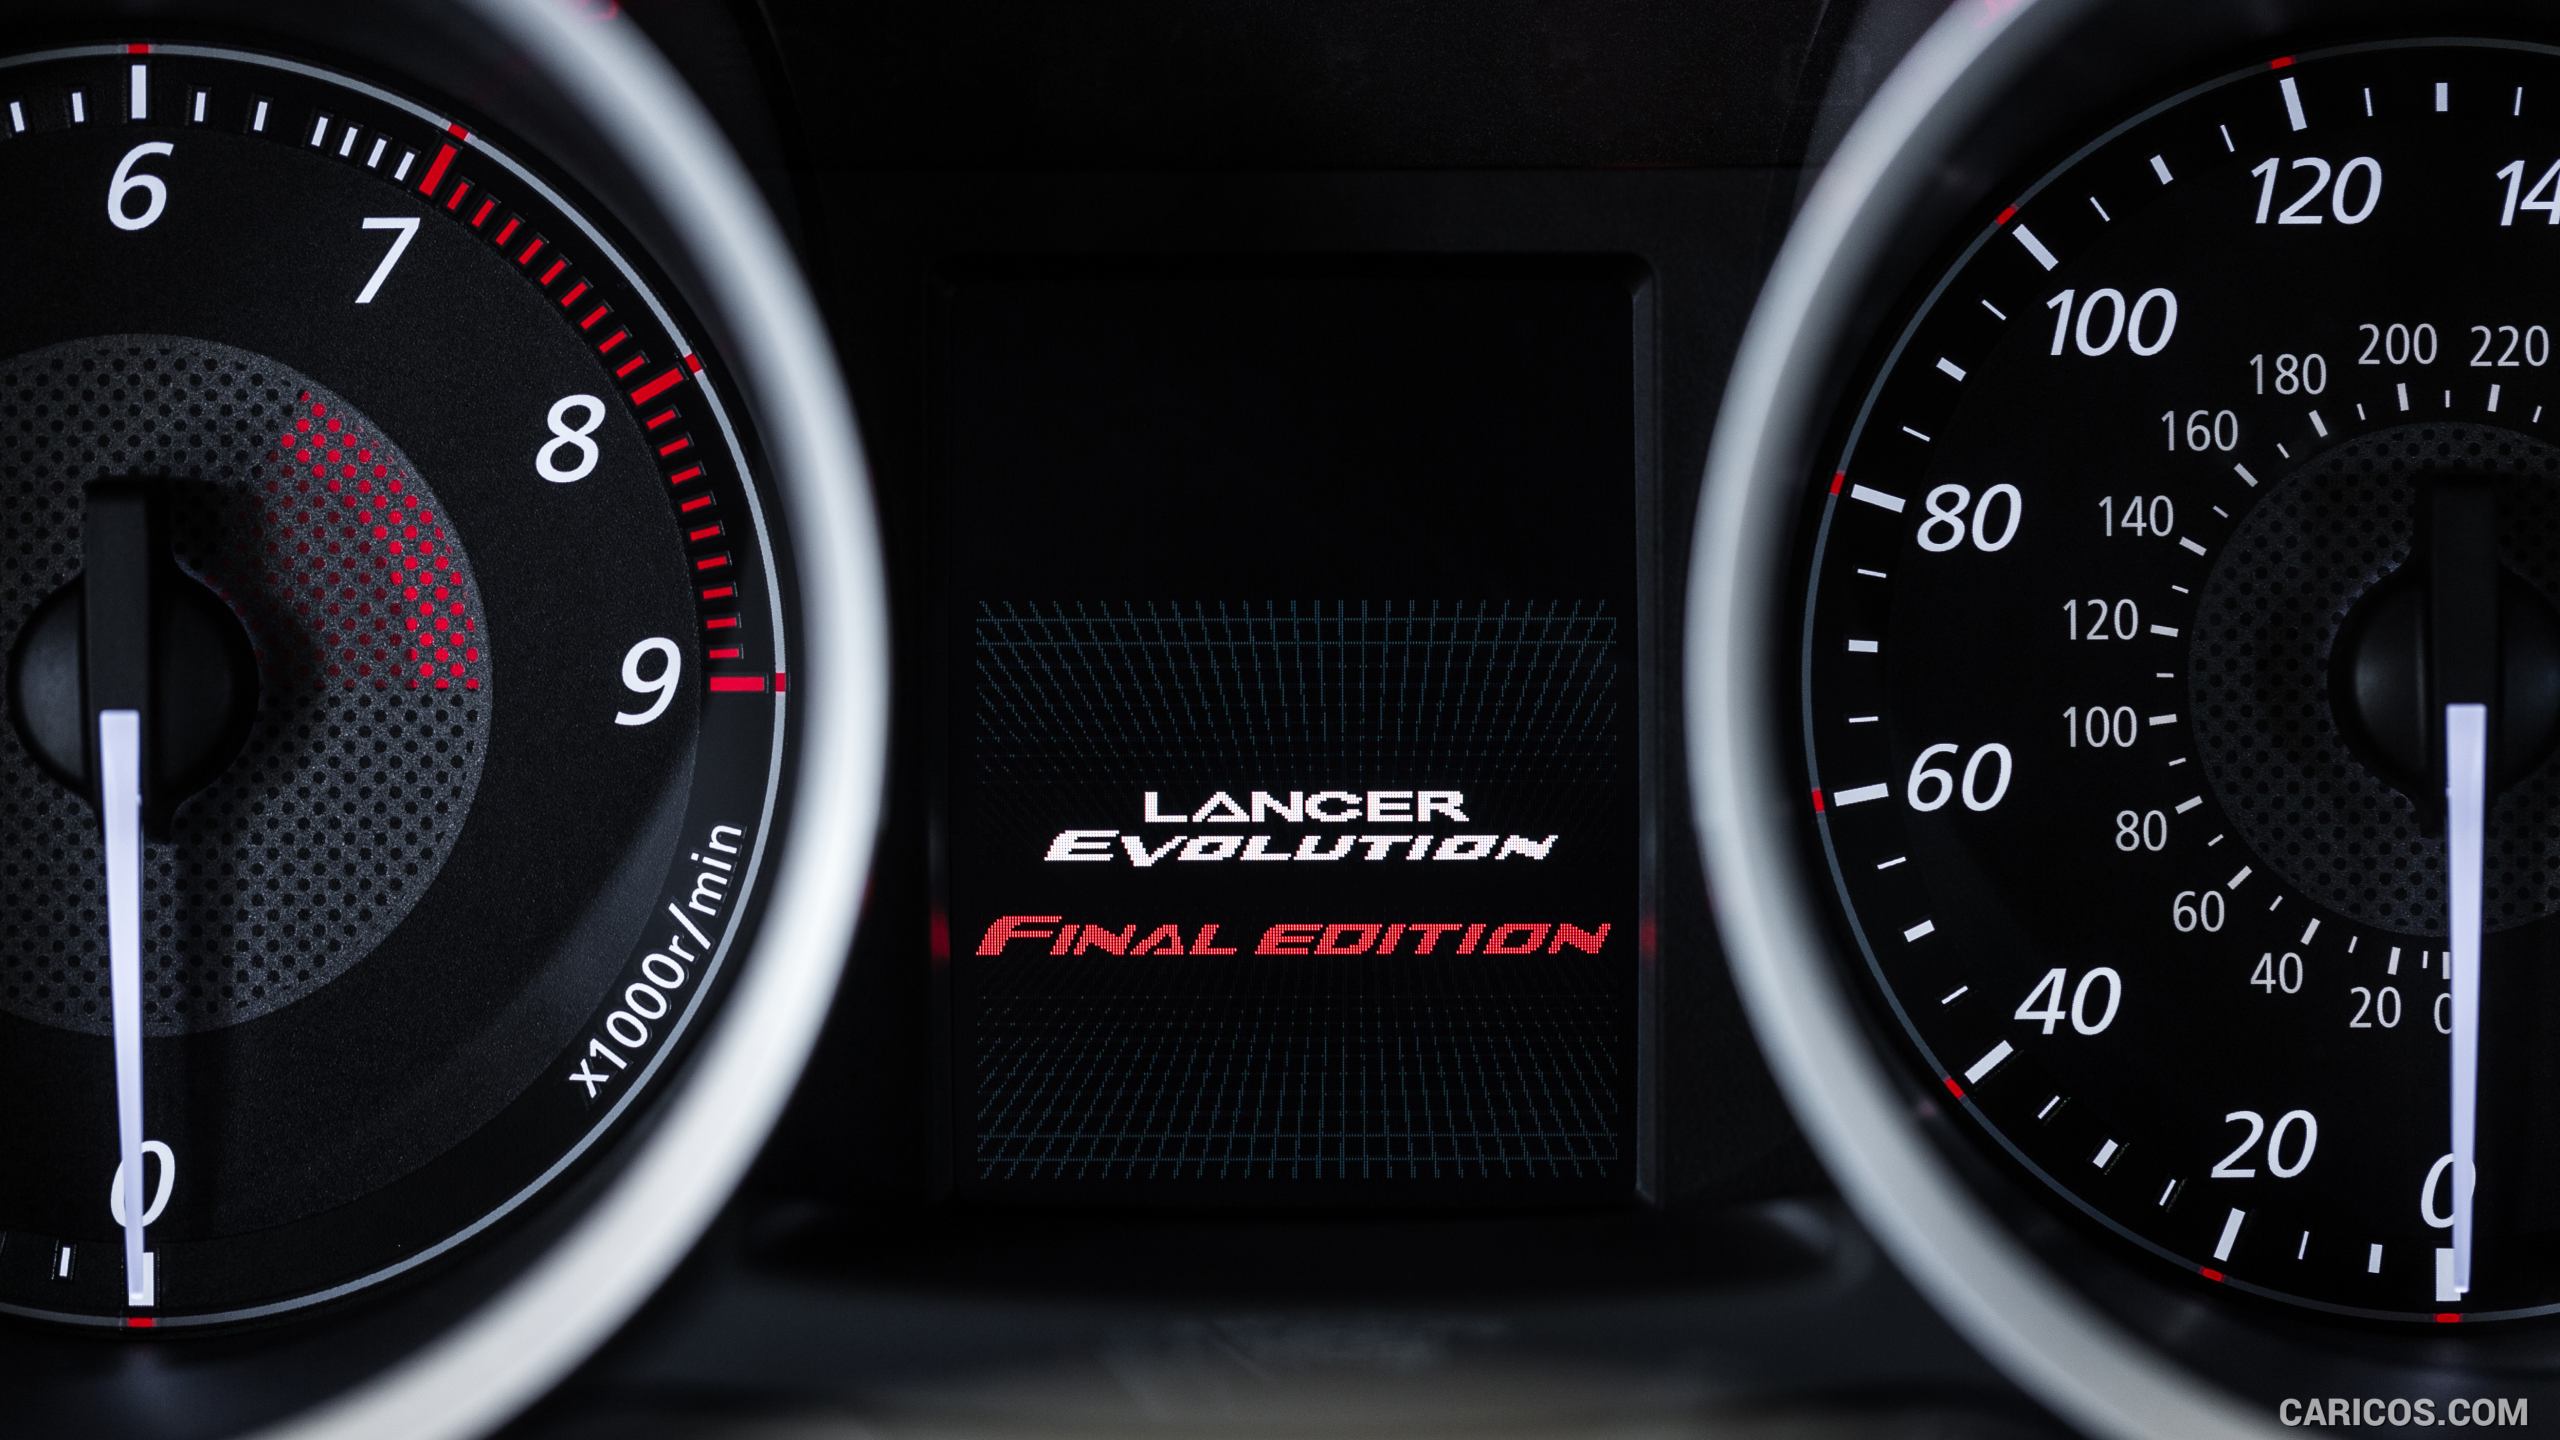 2015 Mitsubishi Lancer Evolution Final Edition - Instrument Cluster, #22 of 30